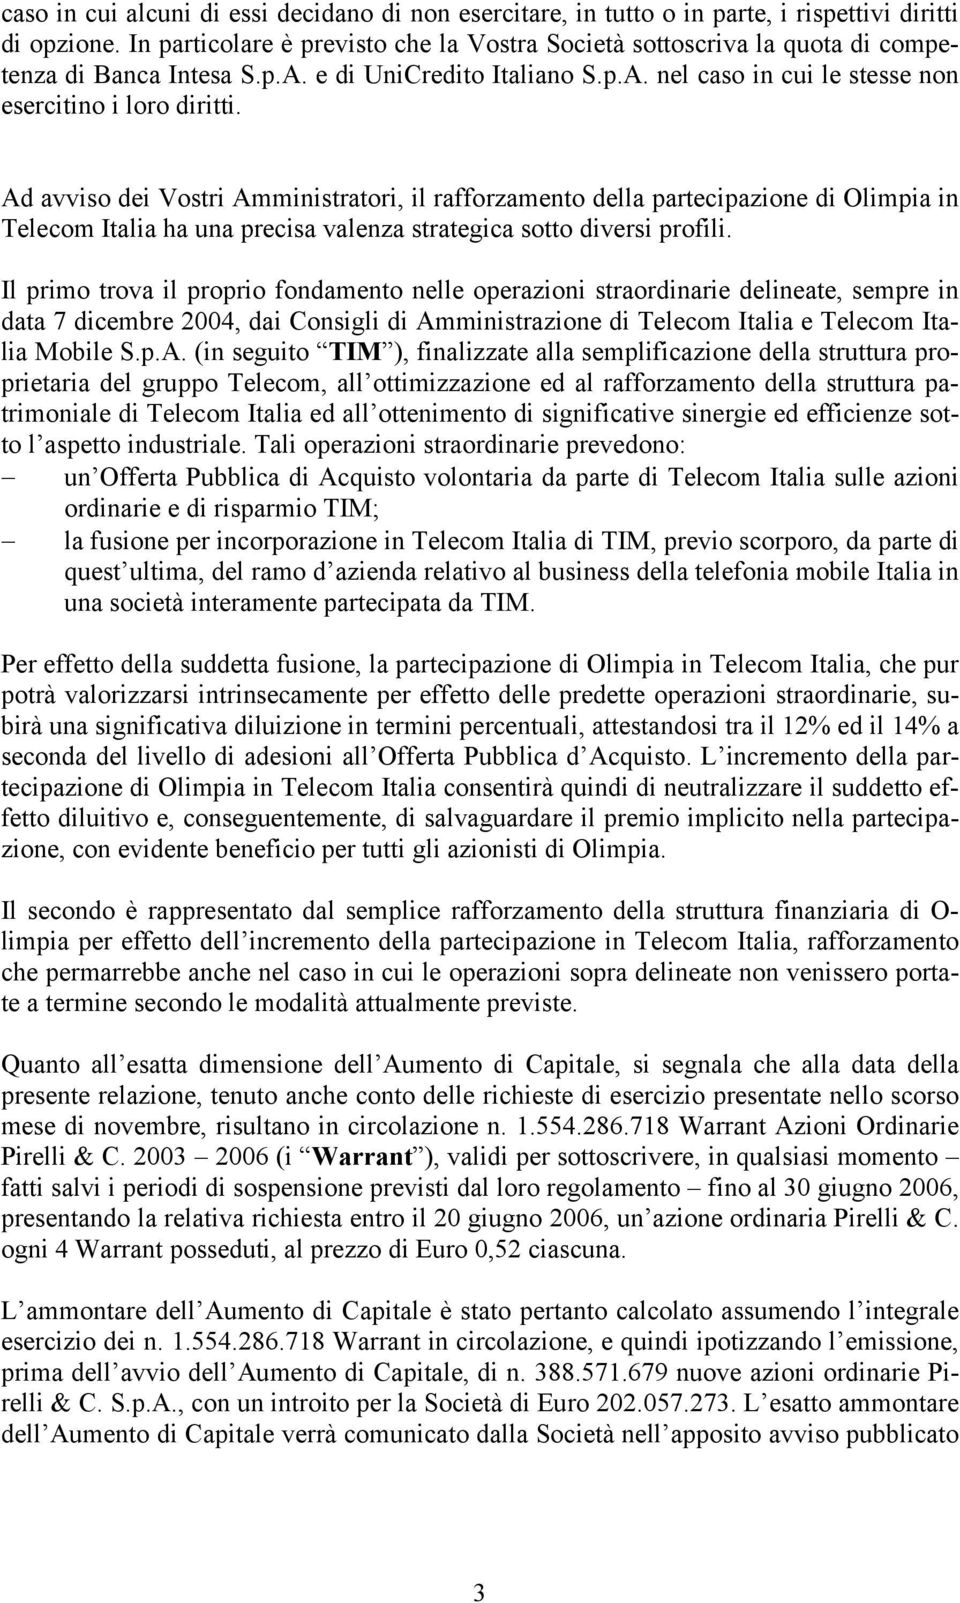 Ad avviso dei Vostri Amministratori, il rafforzamento della partecipazione di Olimpia in Telecom Italia ha una precisa valenza strategica sotto diversi profili.